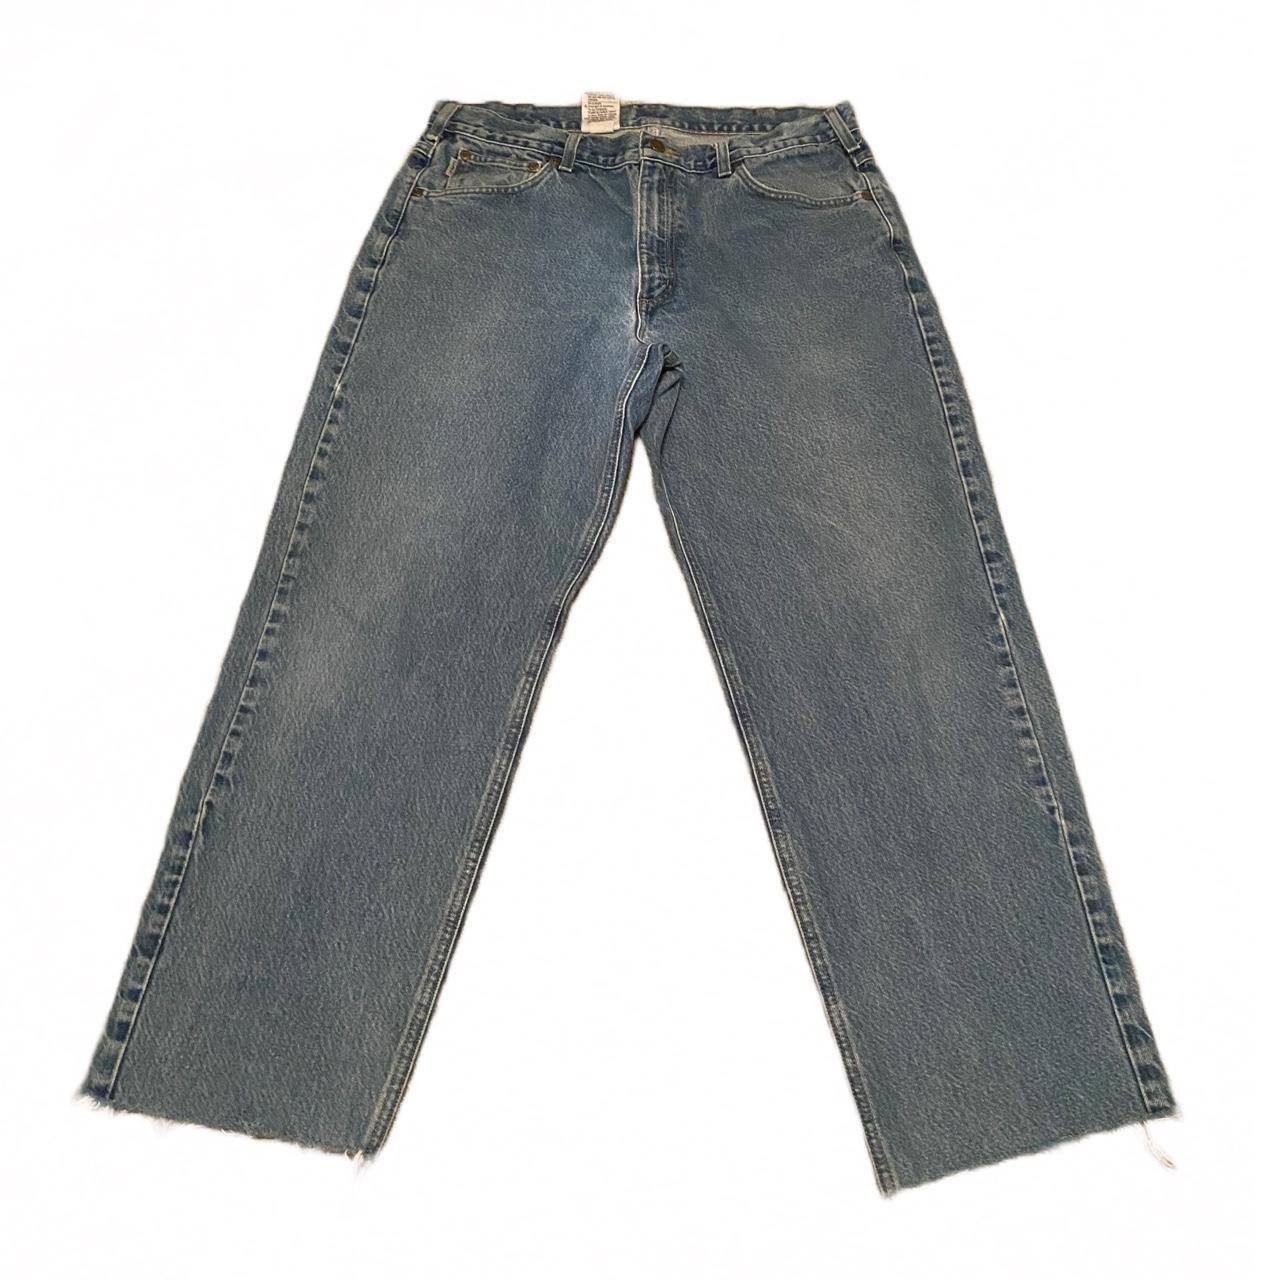 blue carhartt jeans tagged size 36 x 32 but i cut... - Depop